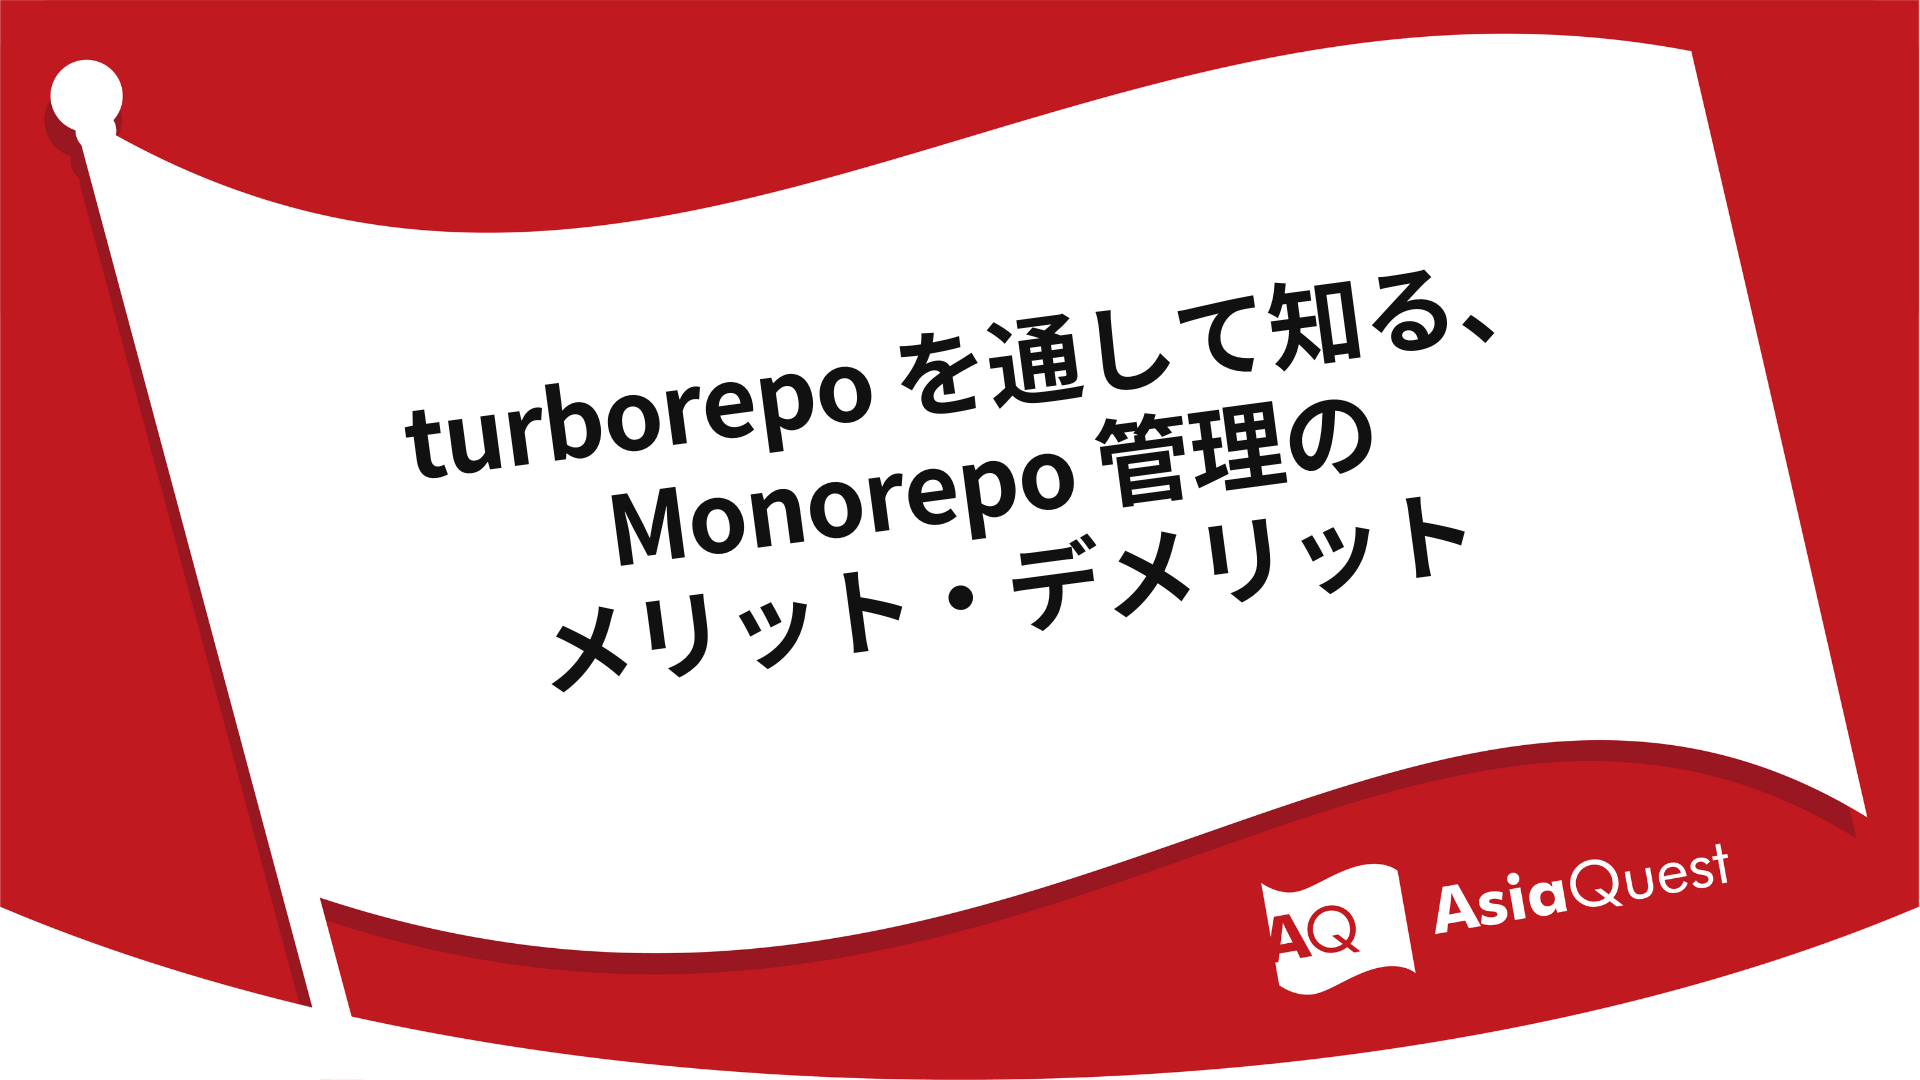 turborepo を通して知る、Monorepo 管理のメリット・デメリット